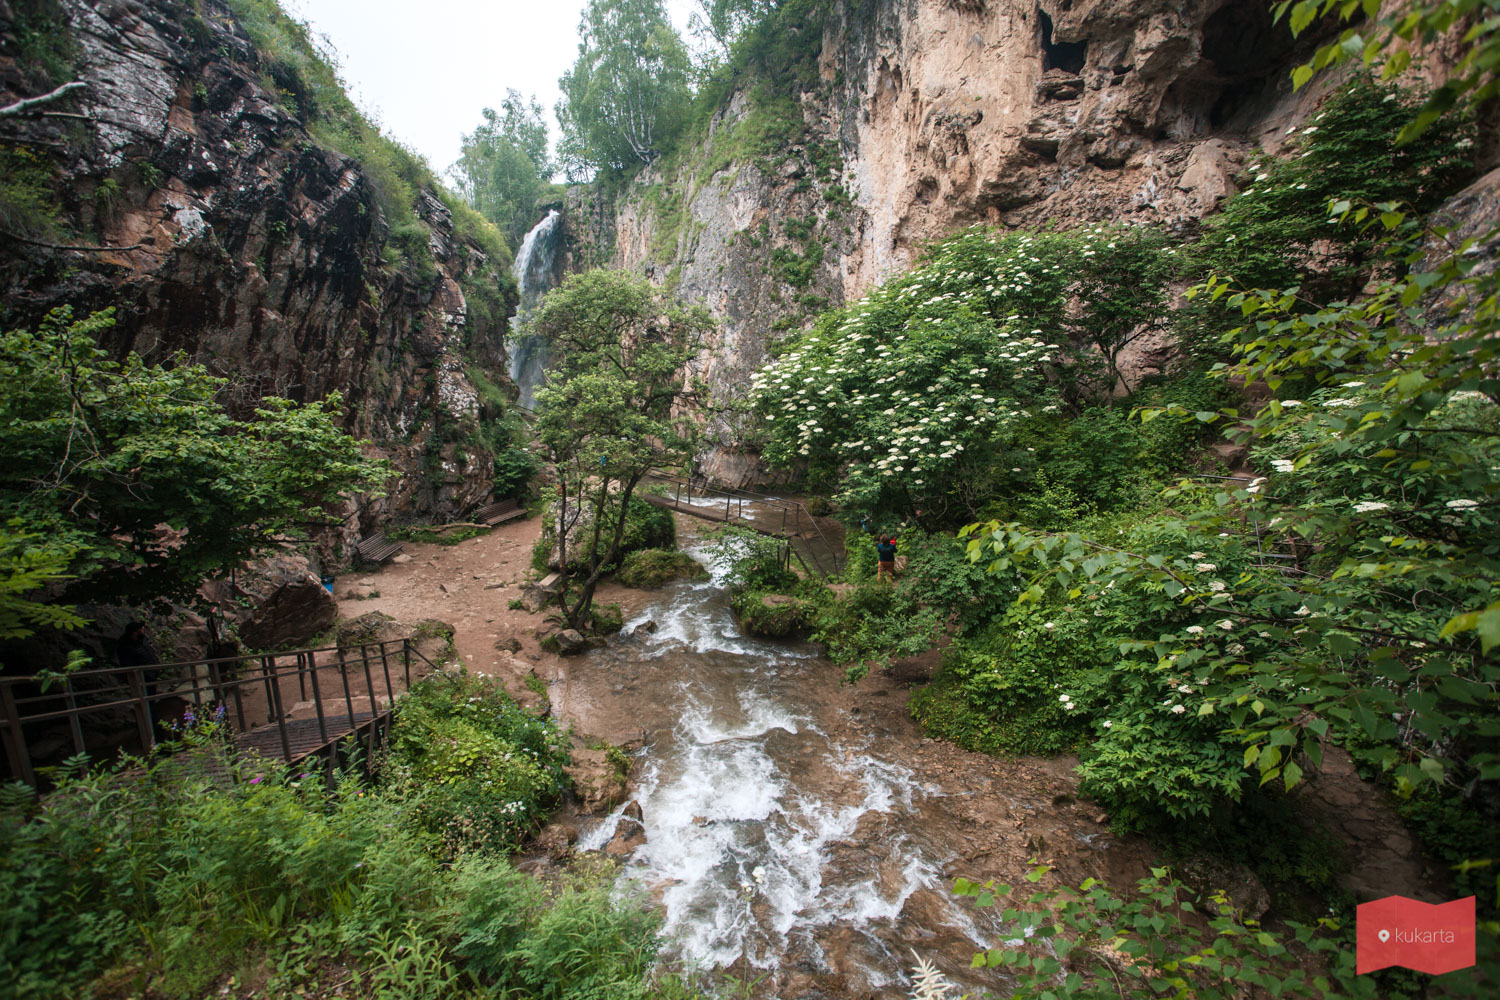 Медовые водопады, Карачаево-Черкесия